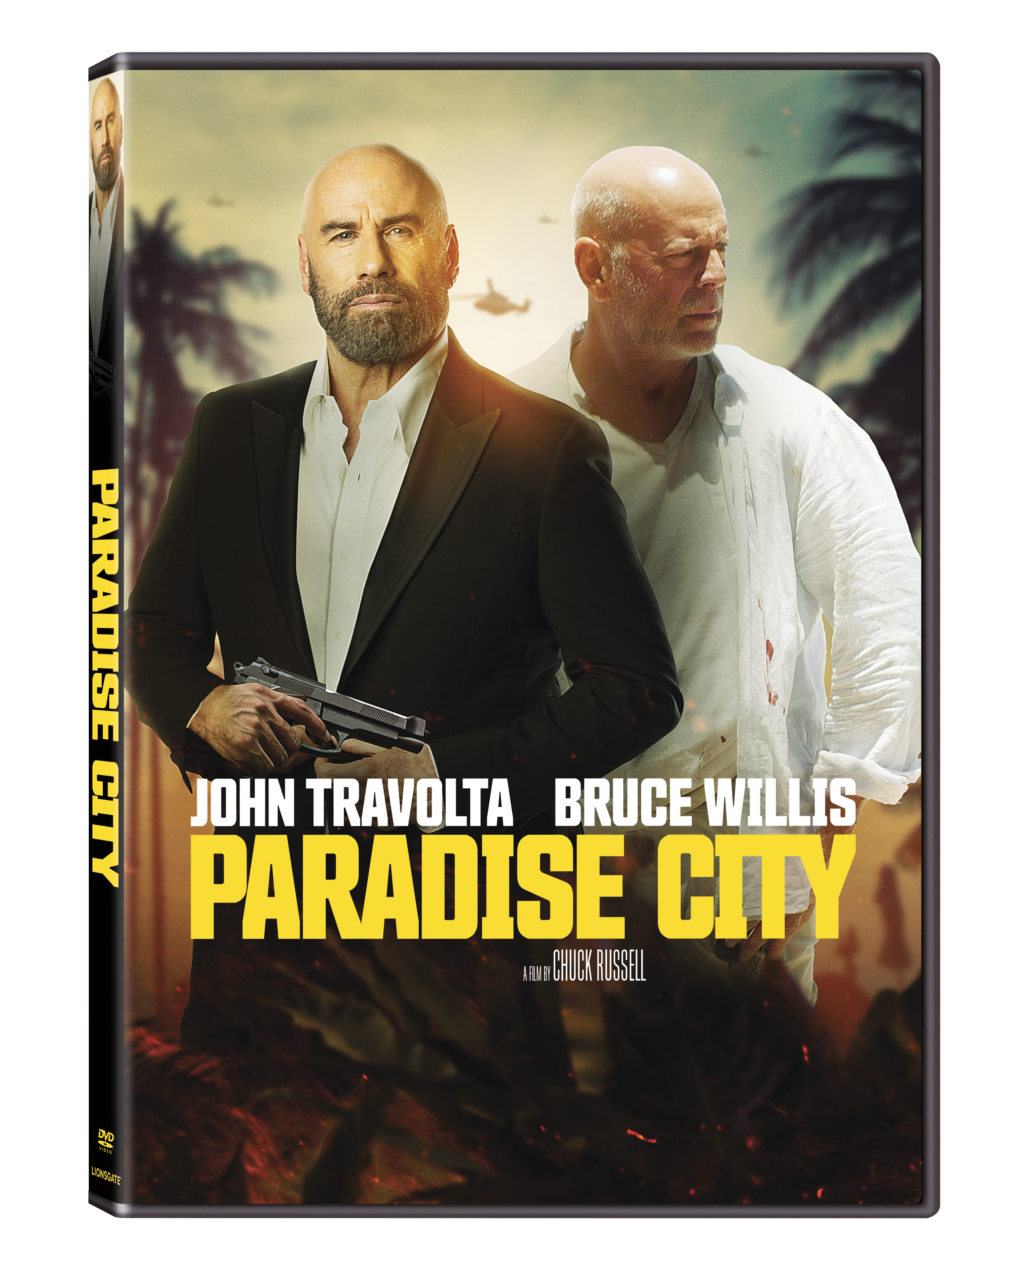 Paradise City DVD cover (Lionsgate)